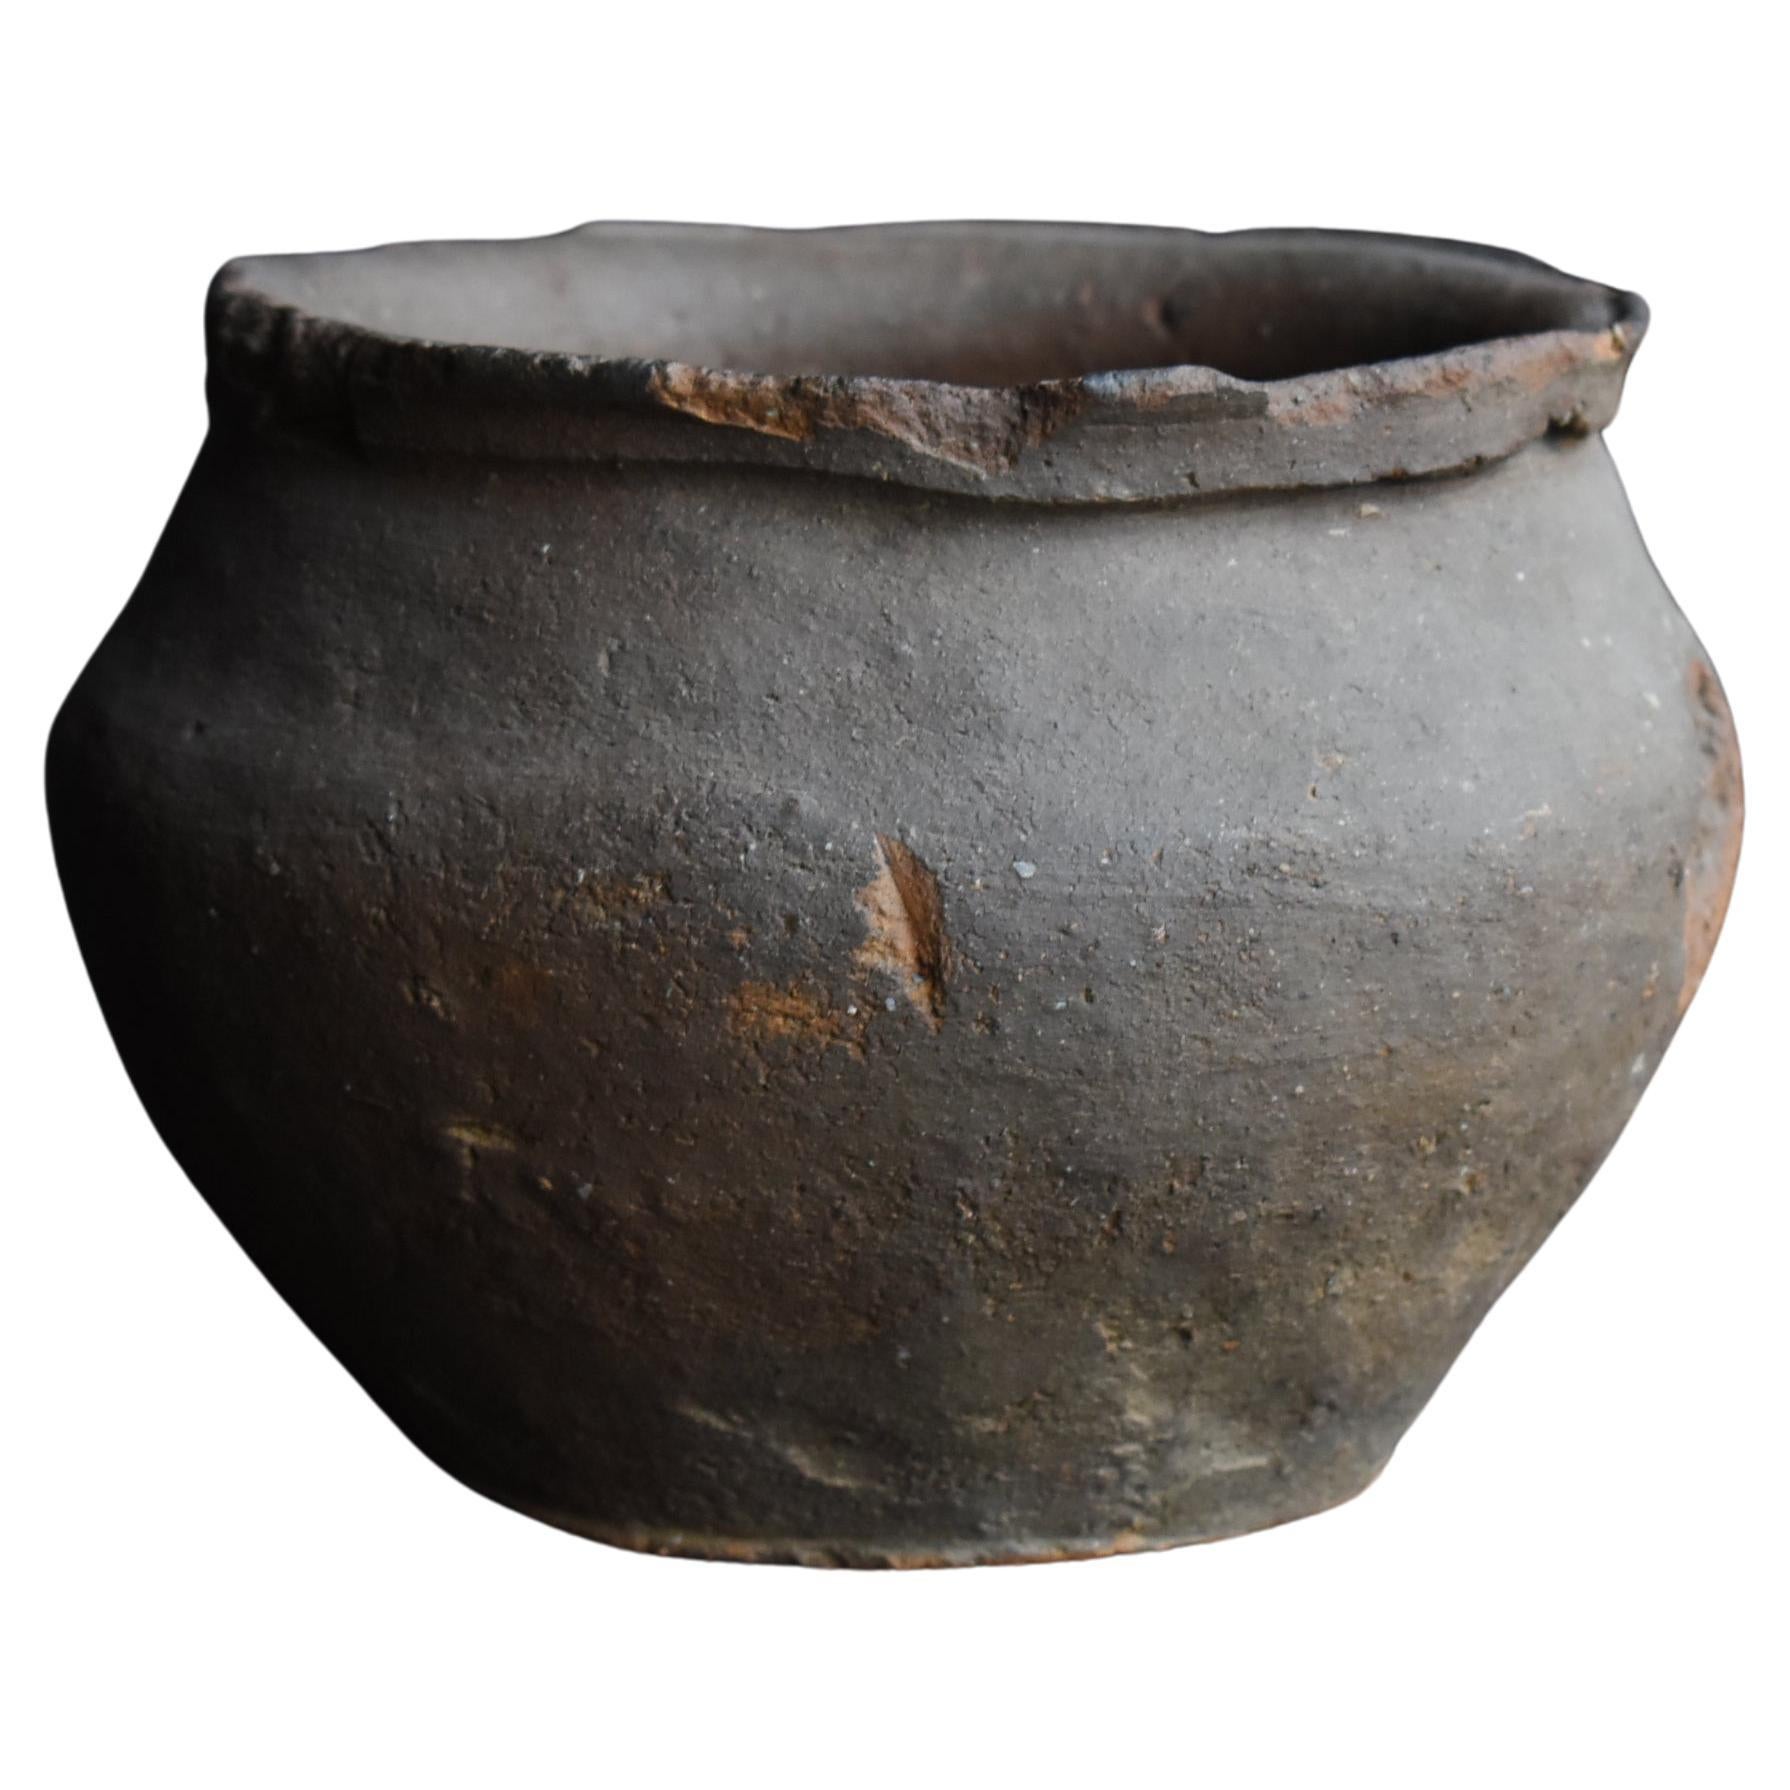 Japanese Antique 13th Century Small Pottery Vase / Wabi Sabi Flower Vase